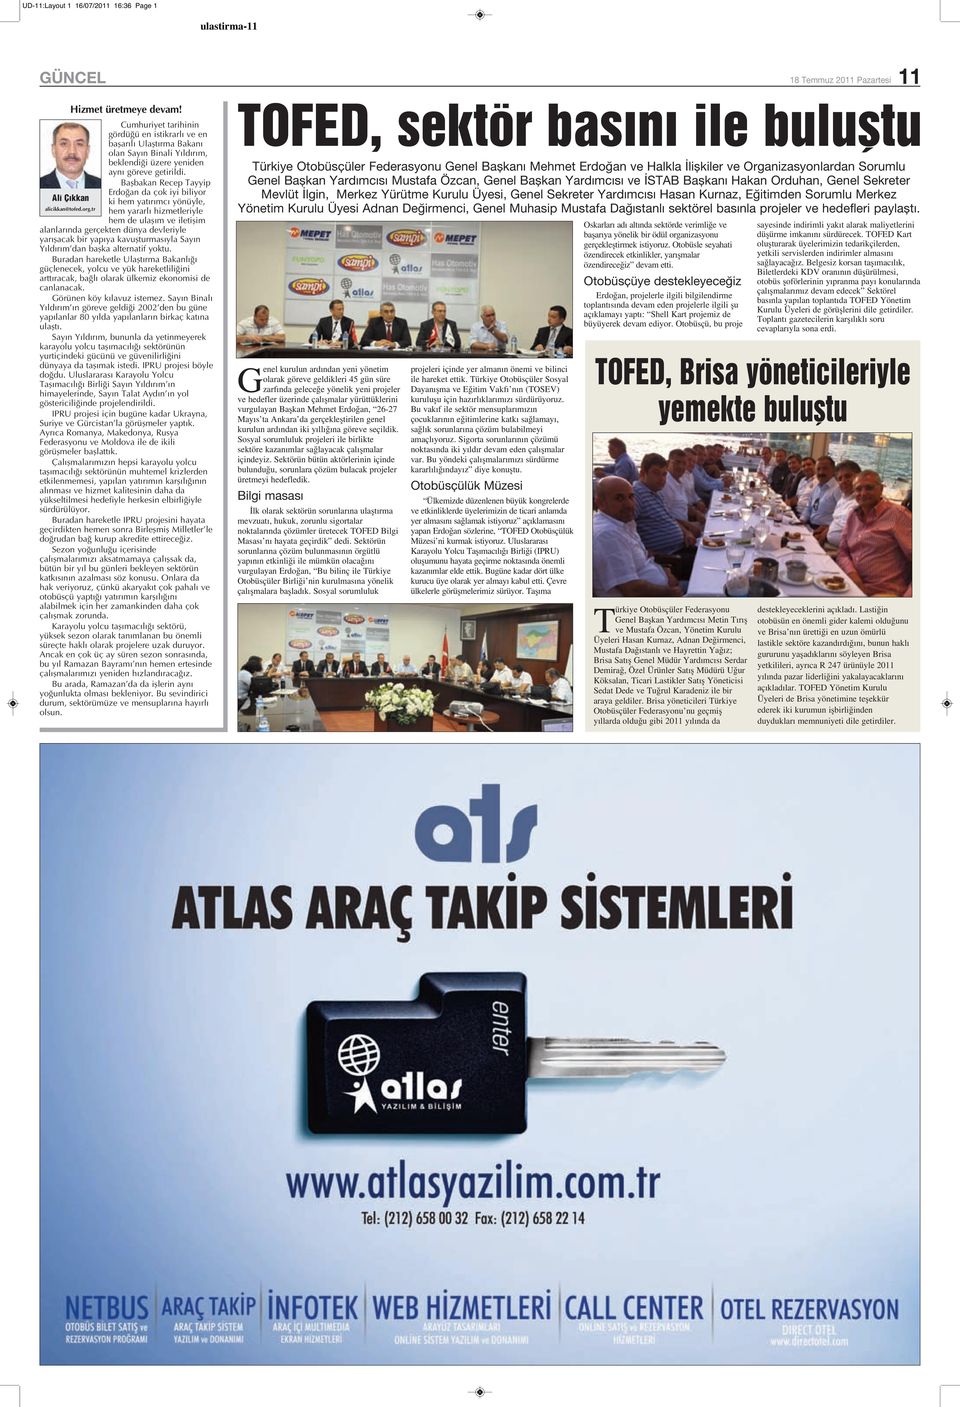 Başbakan Recep Tayyip Erdoğan da çok iyi biliyor Ali Çıkkan ki hem yatırımcı yönüyle, alicikkan@tofed.org.